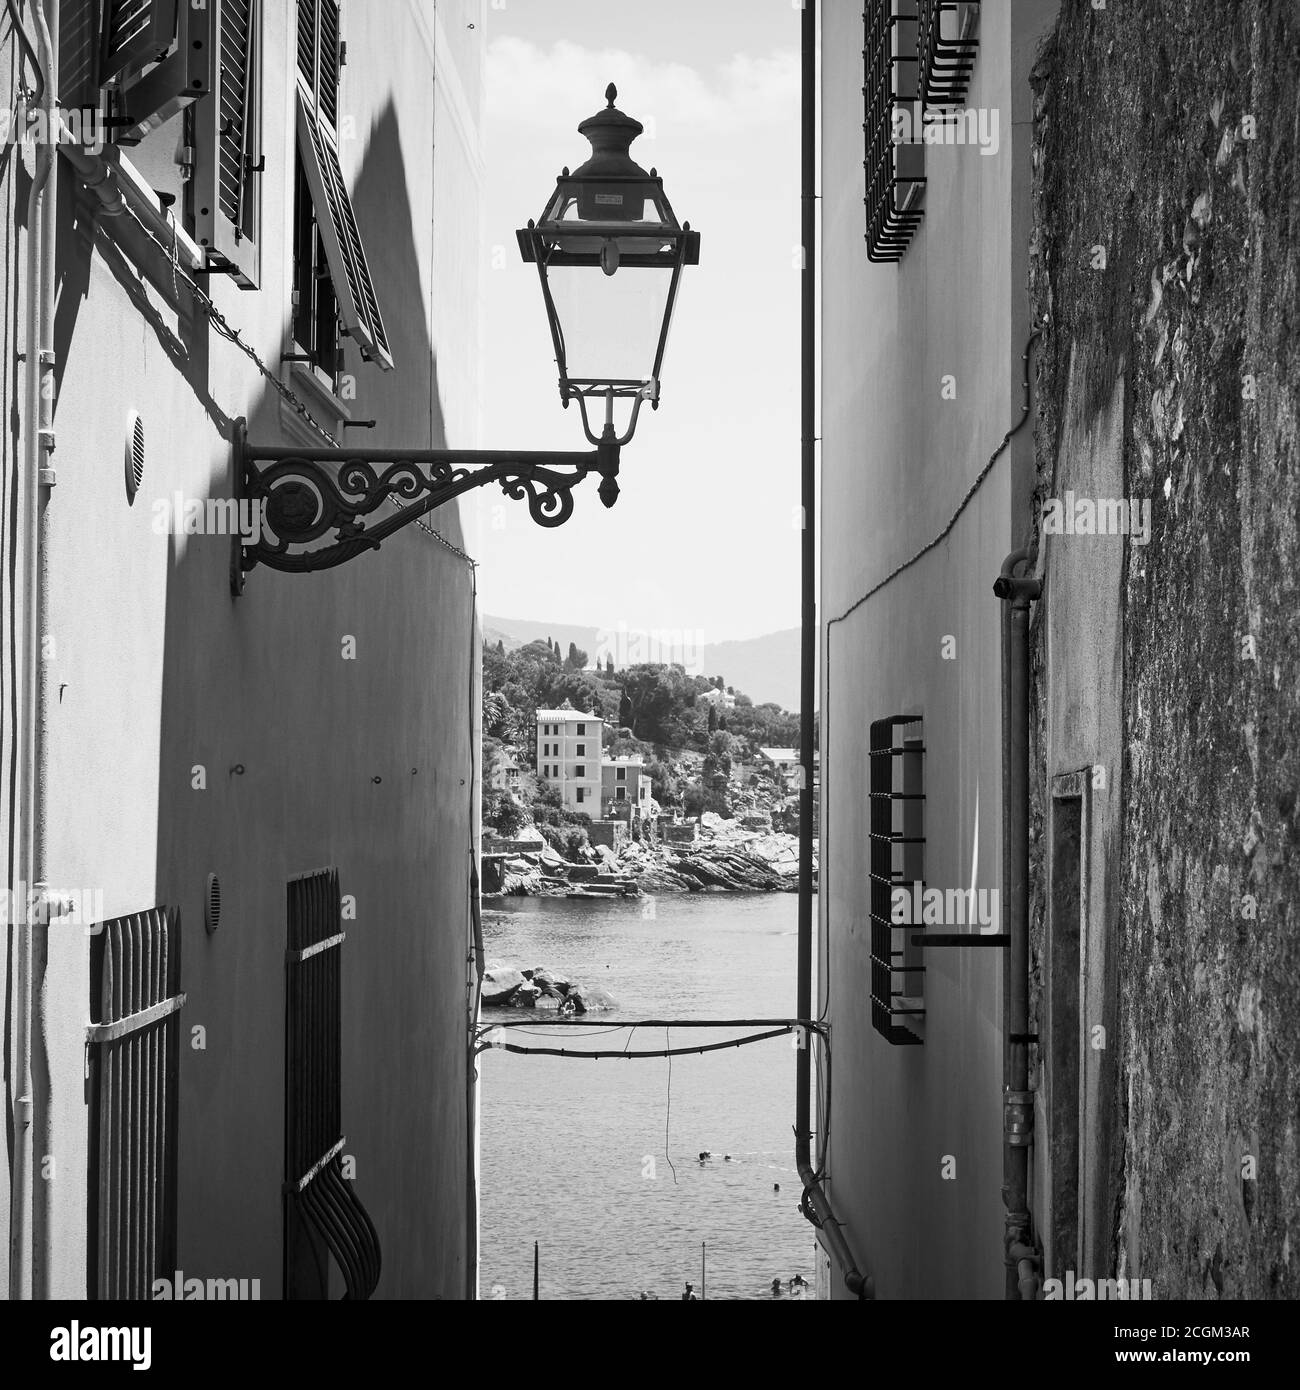 Vieille ruelle avec lumière de rue vintage menant à la mer dans la ville de Bogliasco près de Gênes, Italie. Photographie en noir et blanc, paysage italien Banque D'Images